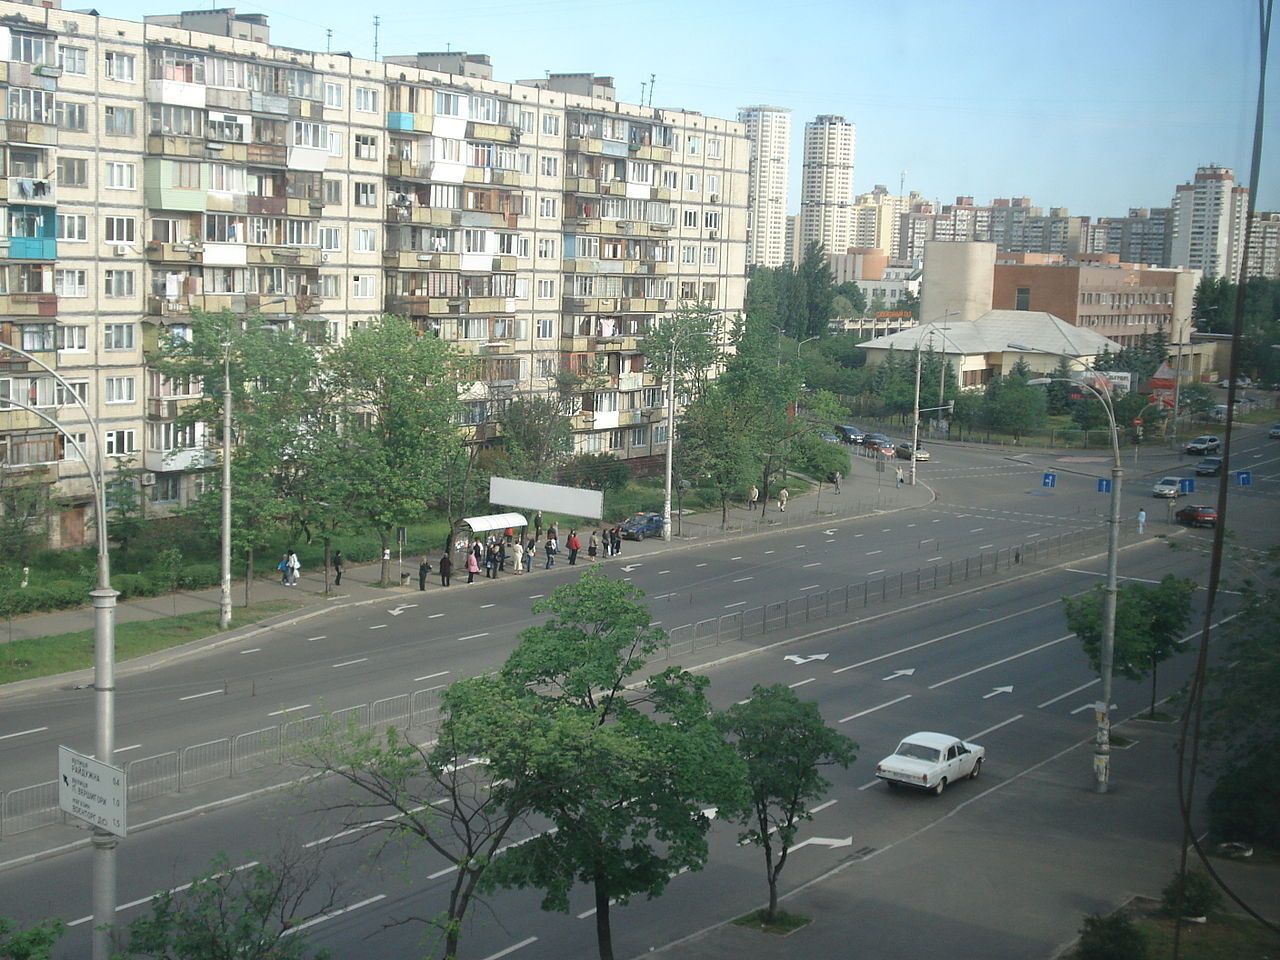 Квартал "На гробах" и повышенное количество ДТП: в Киеве на Воскресенке есть зловещий холм. Фото и история